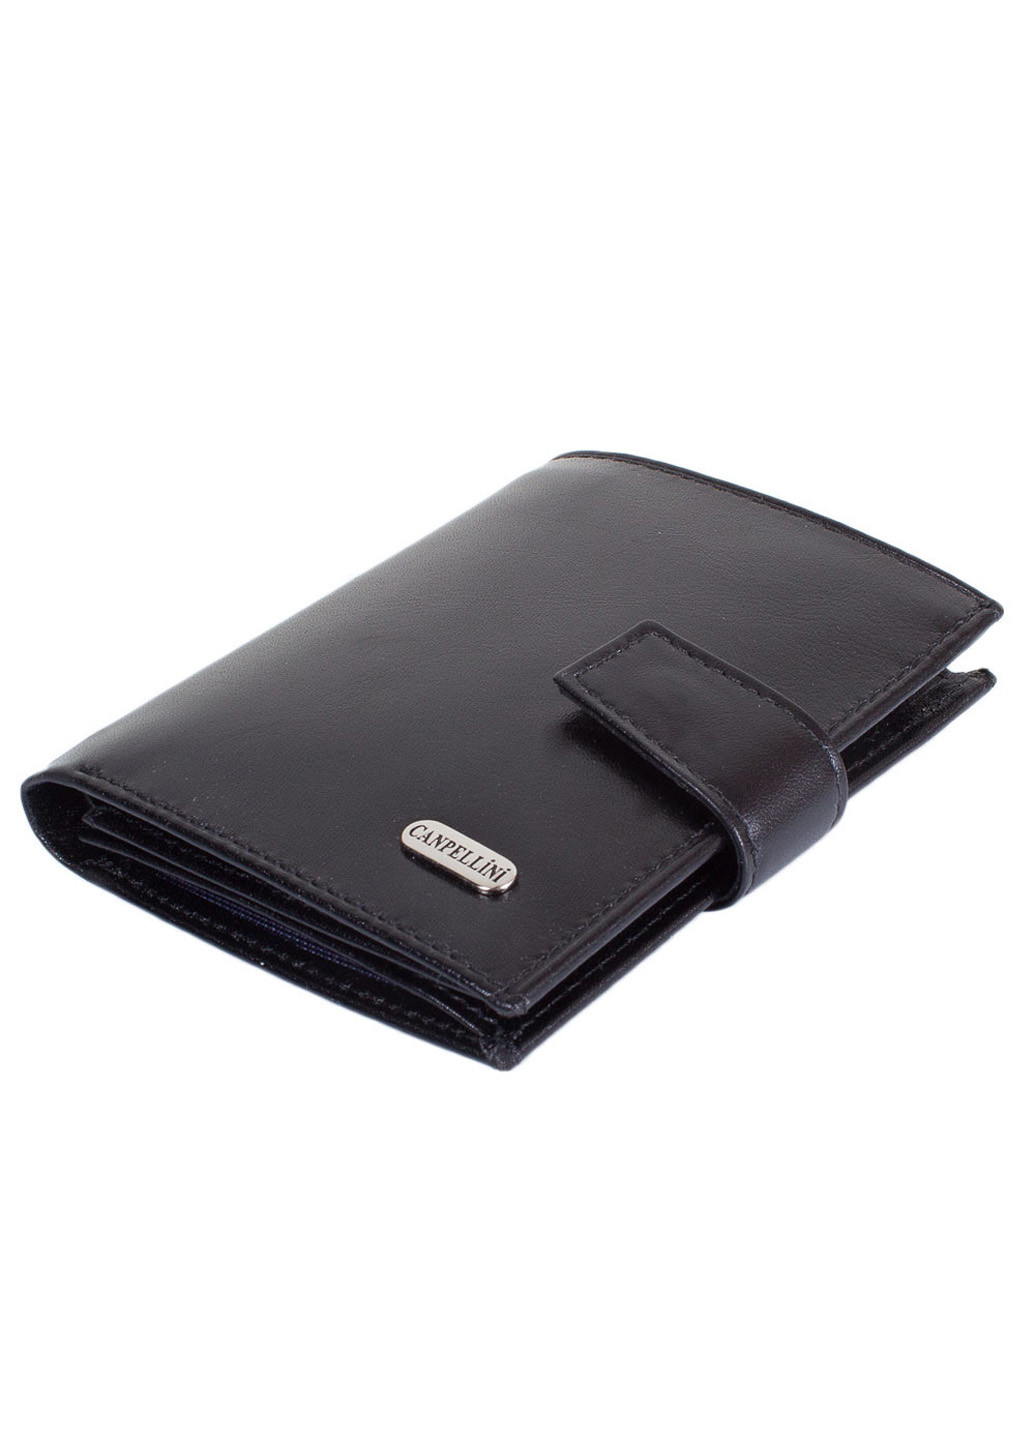 Чоловік шкіряний гаманець 9,5х11,5х1,5 см Canpellini (195771420)